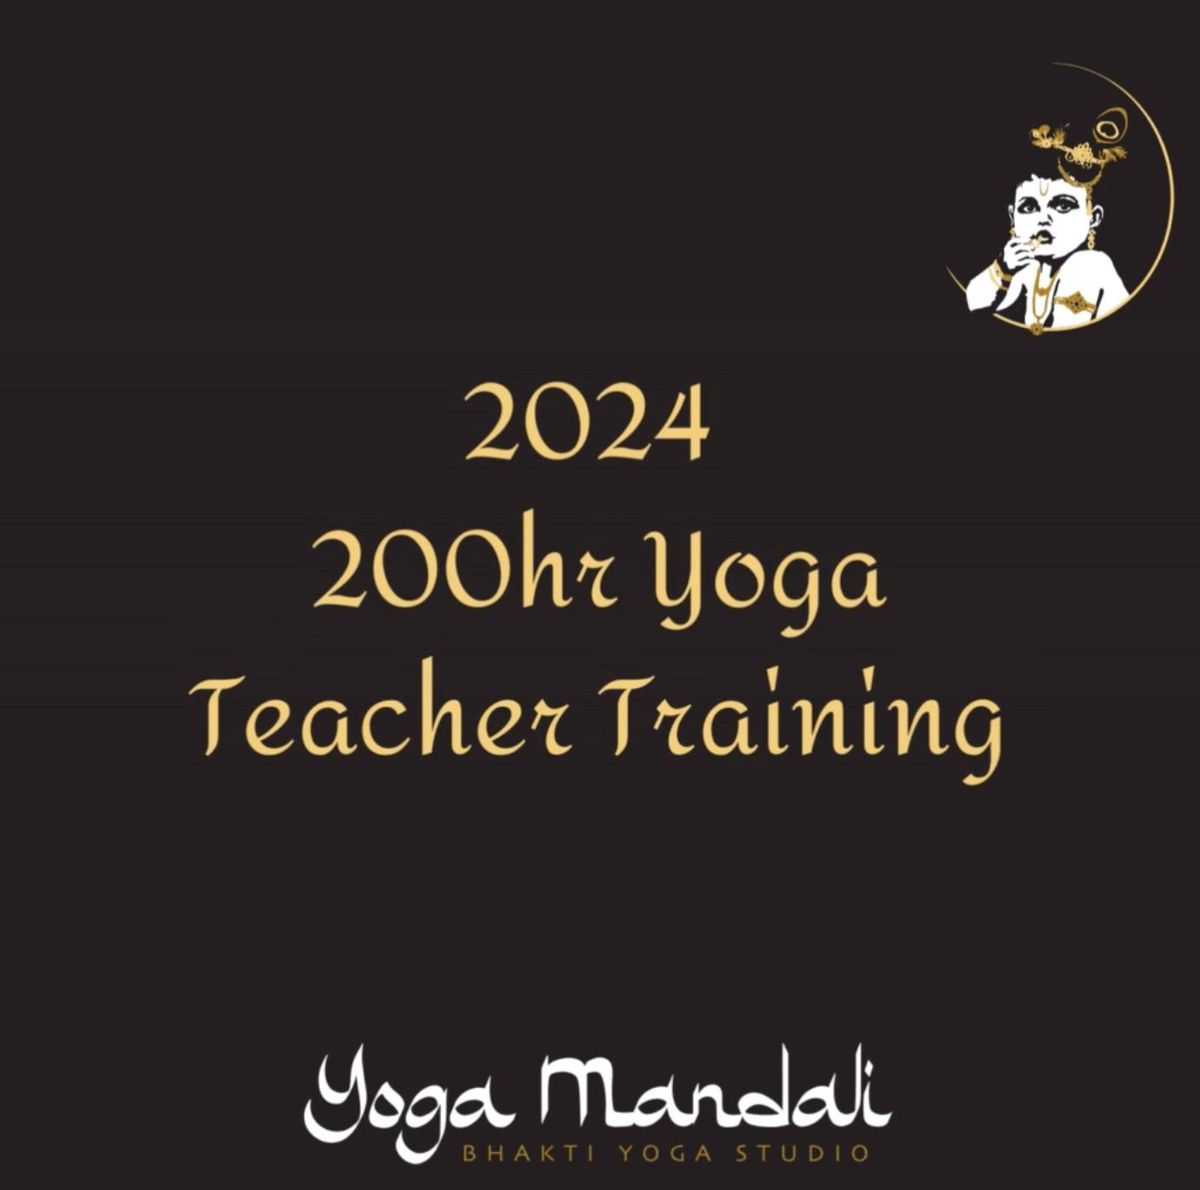 200hr Yoga Teacher Training: Teach from the Heart